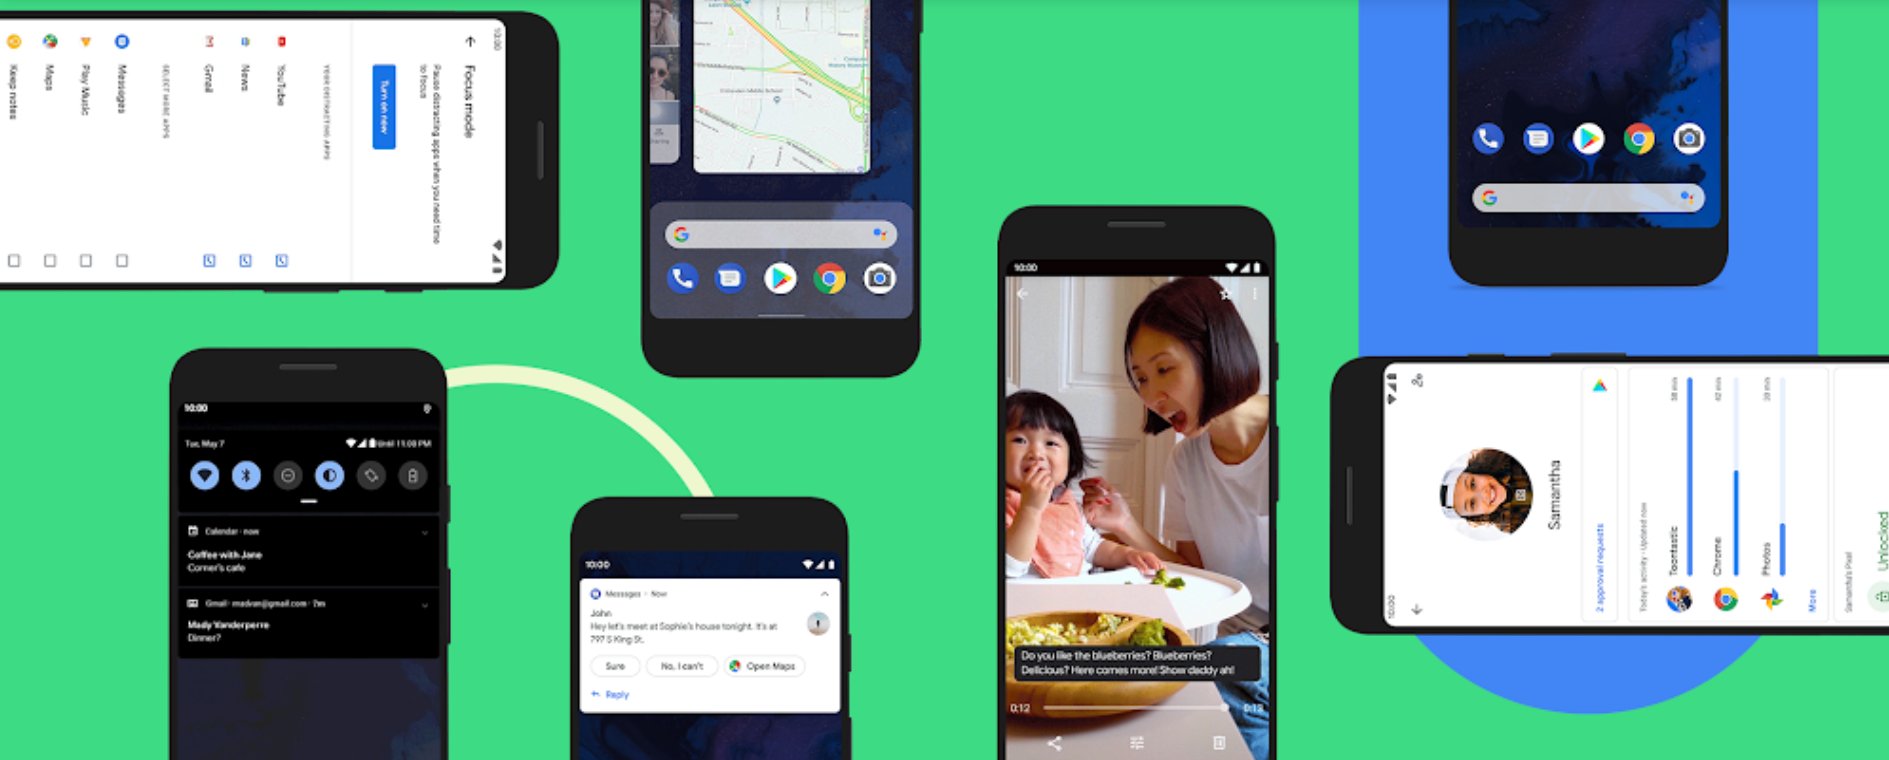 Aktualizacja do Androida 10 zawiesza smartfony na ekranie startowym